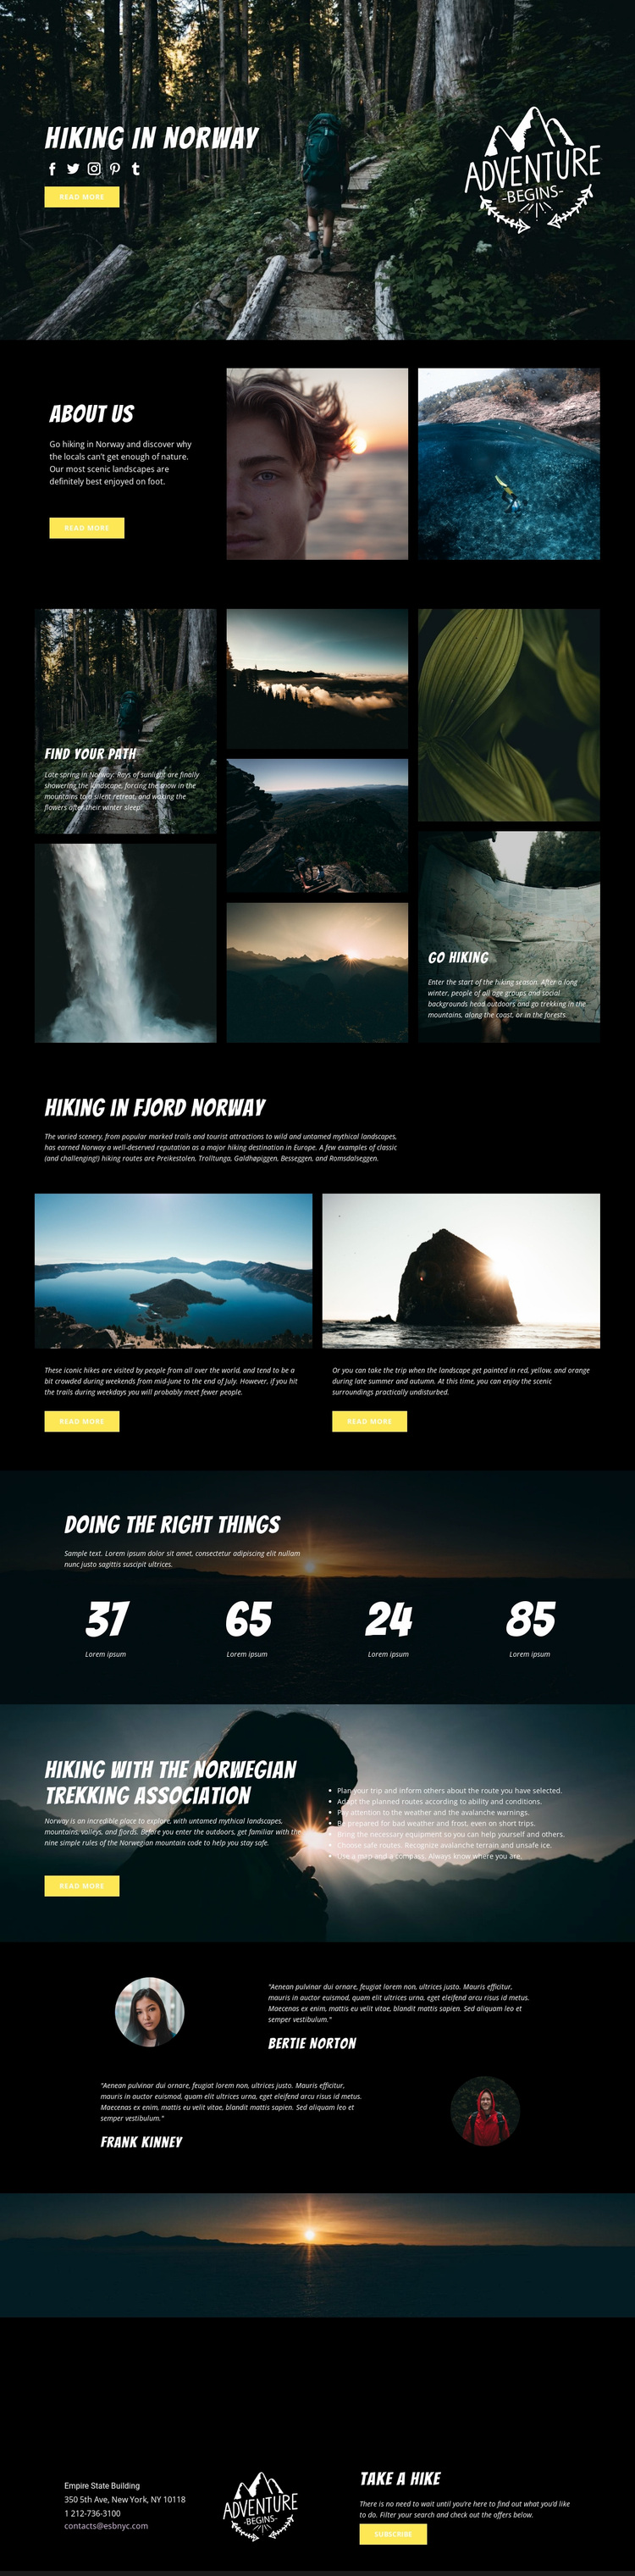 Norway Website Design